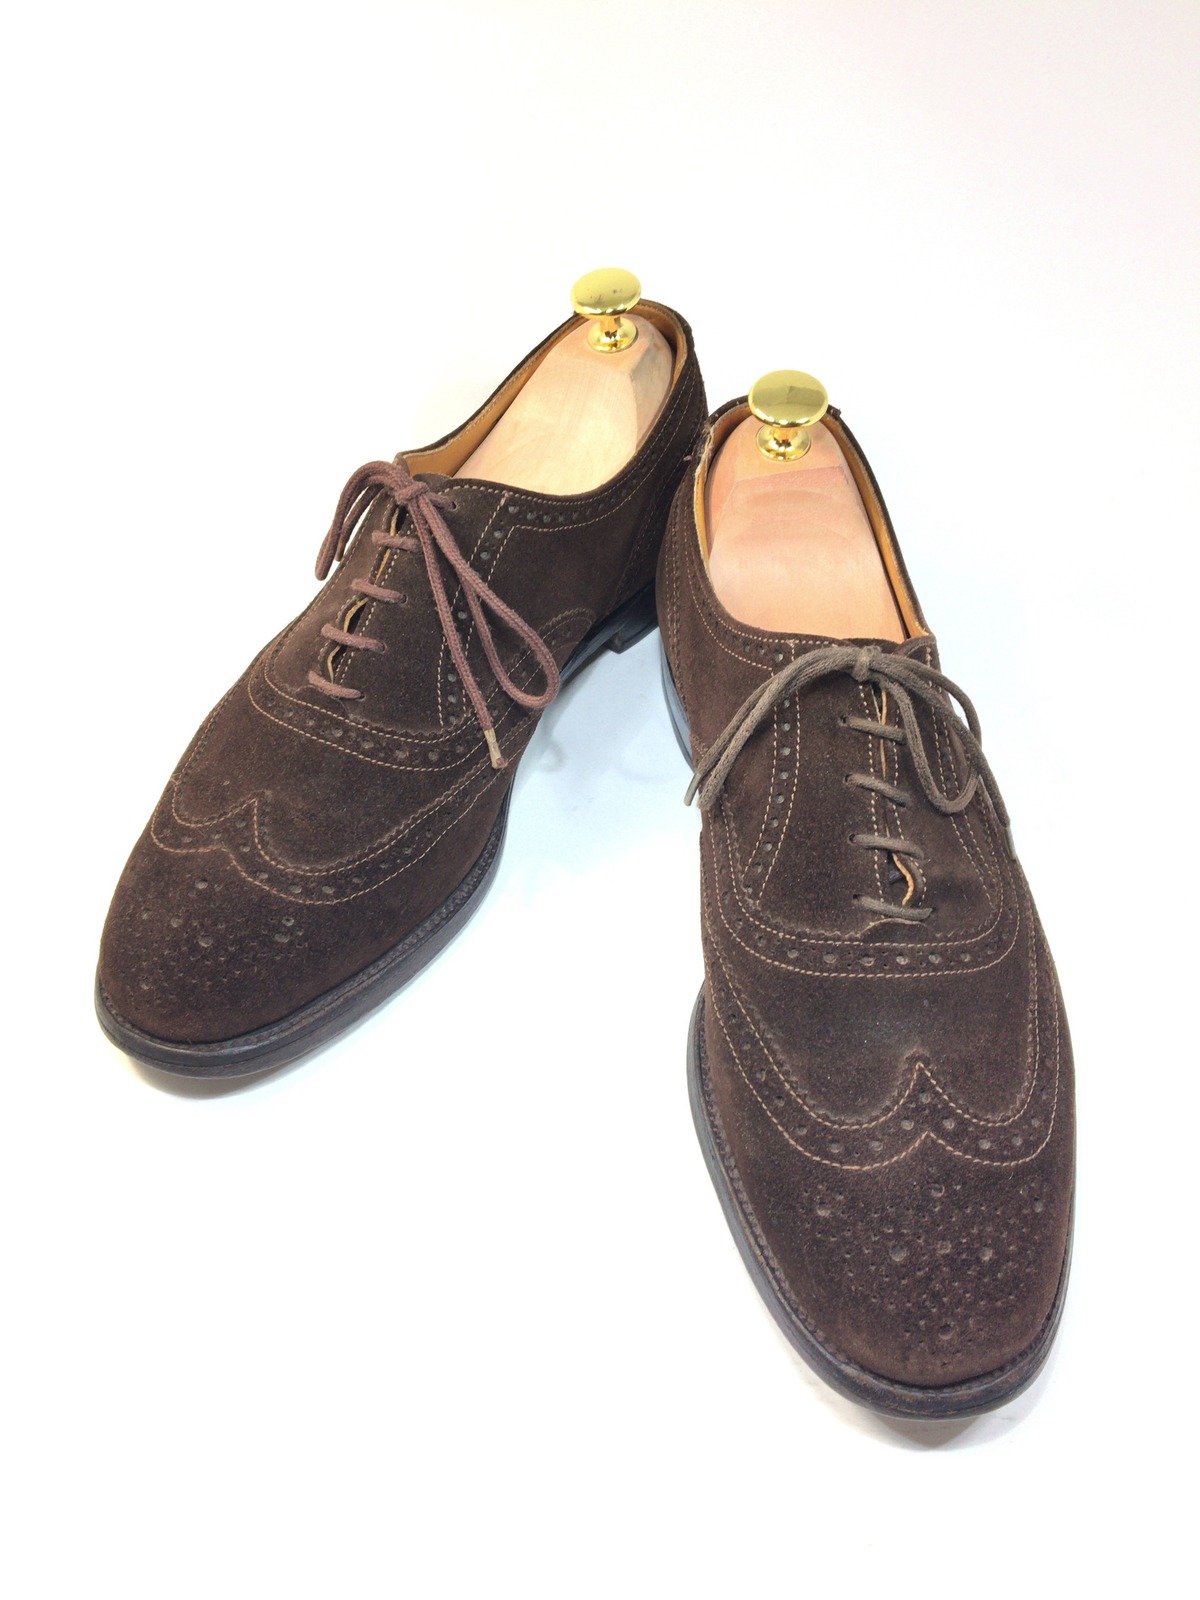 トリッカーズ Tricker's スエード フルブローグ 26cm | 中古靴・革靴・ブーツ通販専門店 DafsMart ダフスマート